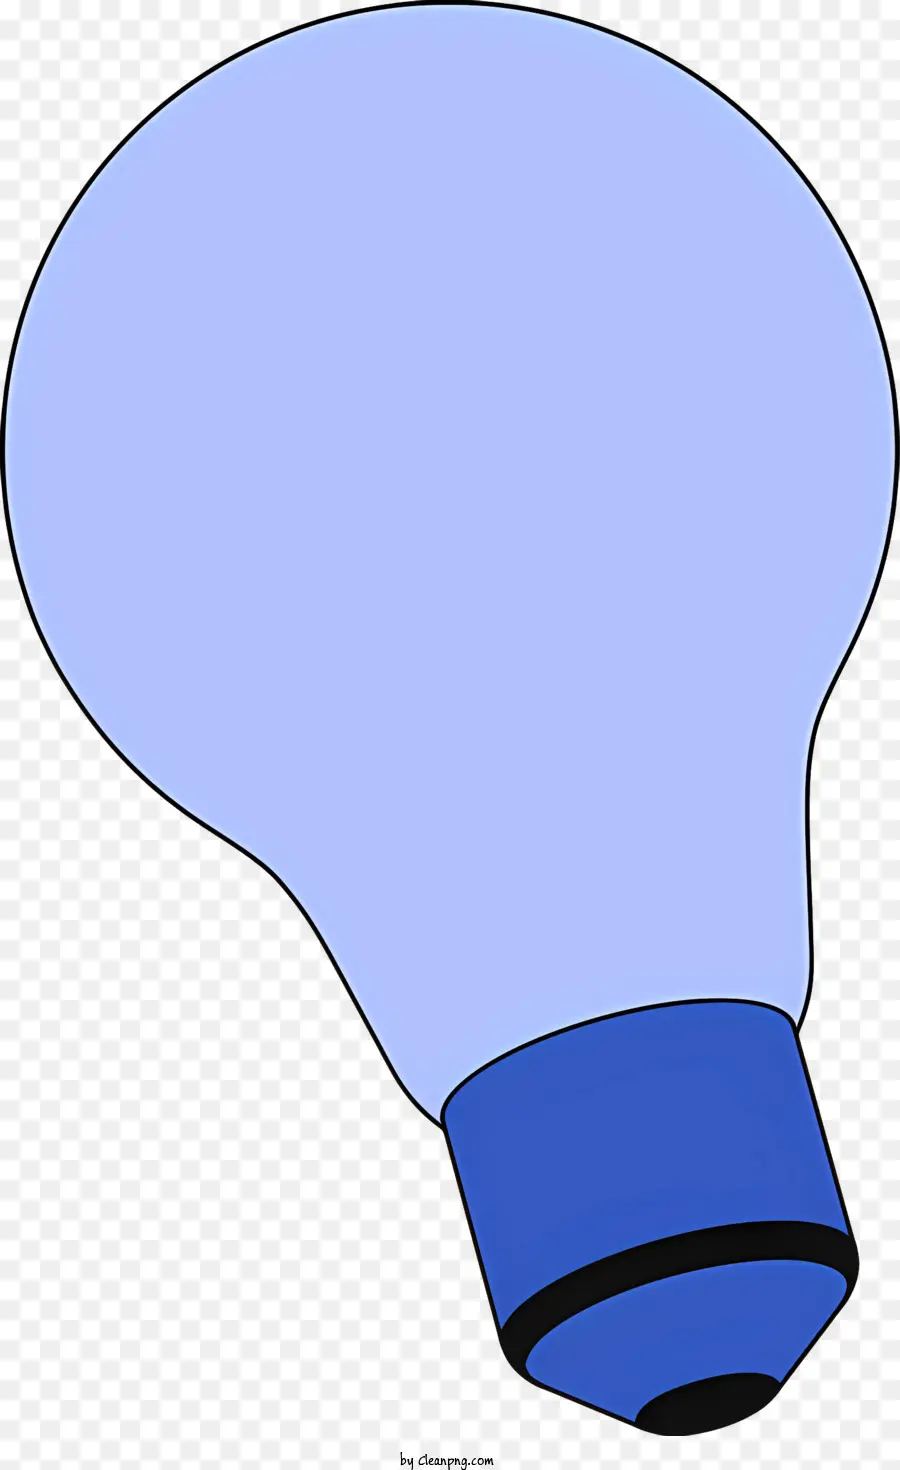 Objekte blaue Glühbirne Reflektierende Glühbirnenbuchse Beleuchtung Inspiration Beleuchtung Design - Blaues Licht scheint aus der Glühbirnenhöhle